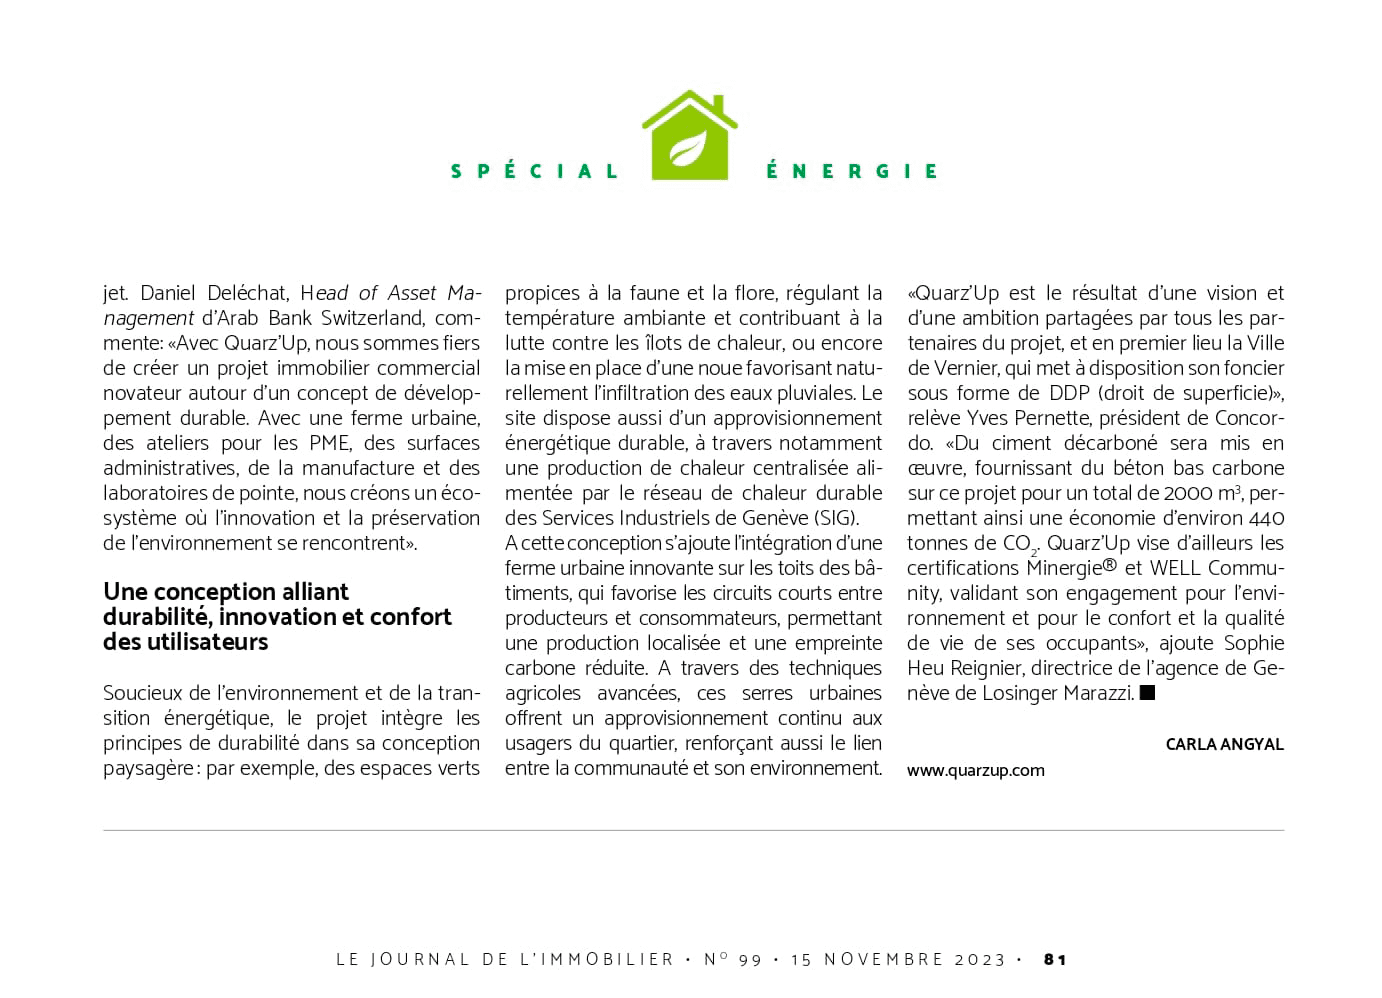 Le journal de l'immobilier page 2